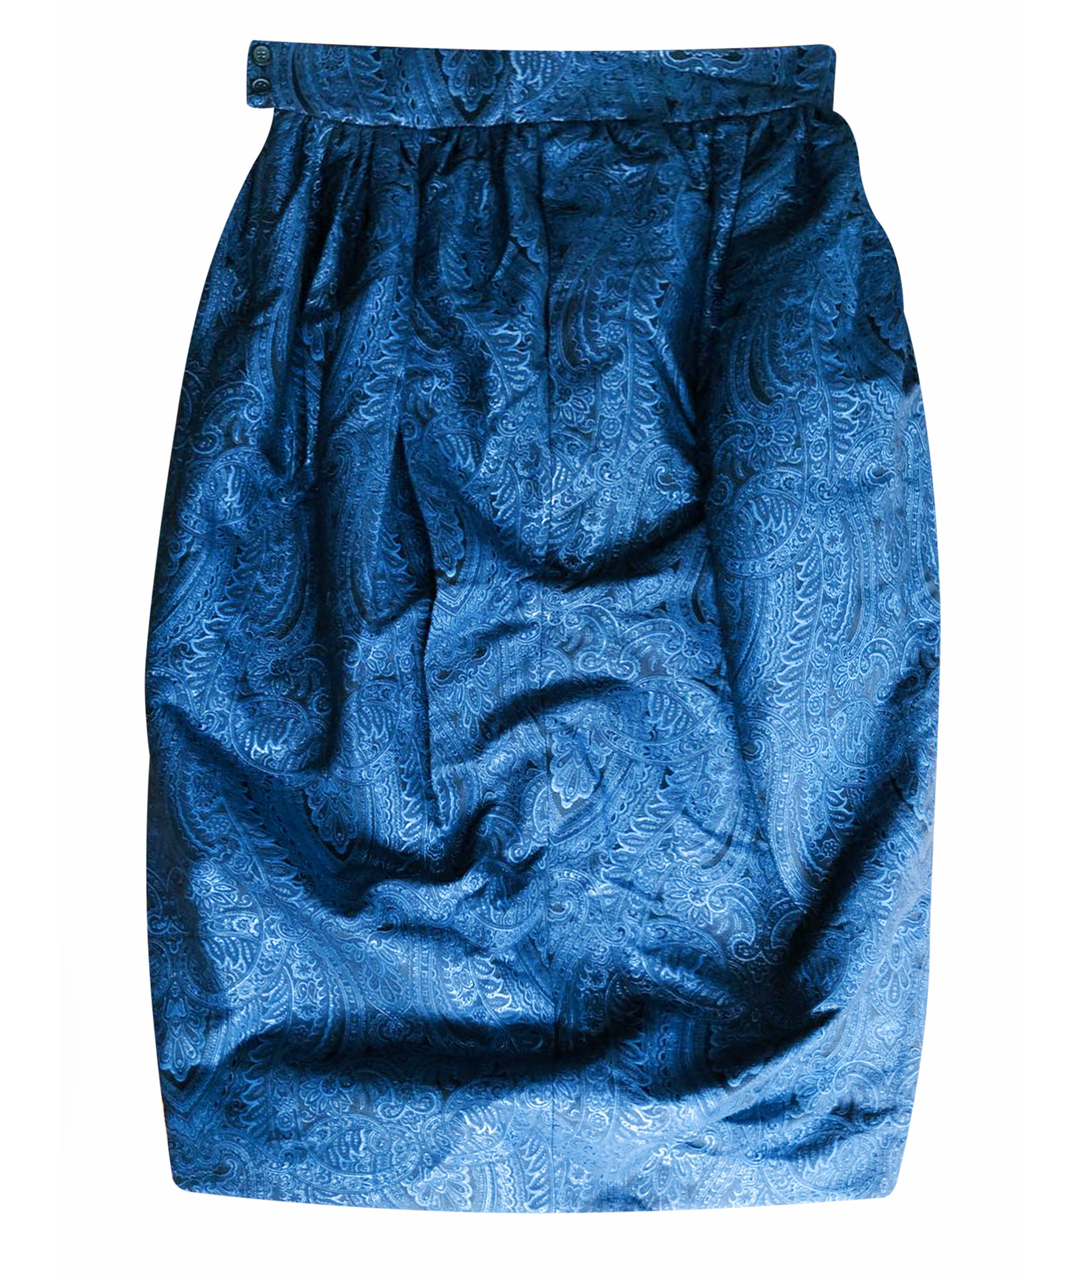 A LA RUSSE Темно-синяя шерстяная юбка макси, фото 1